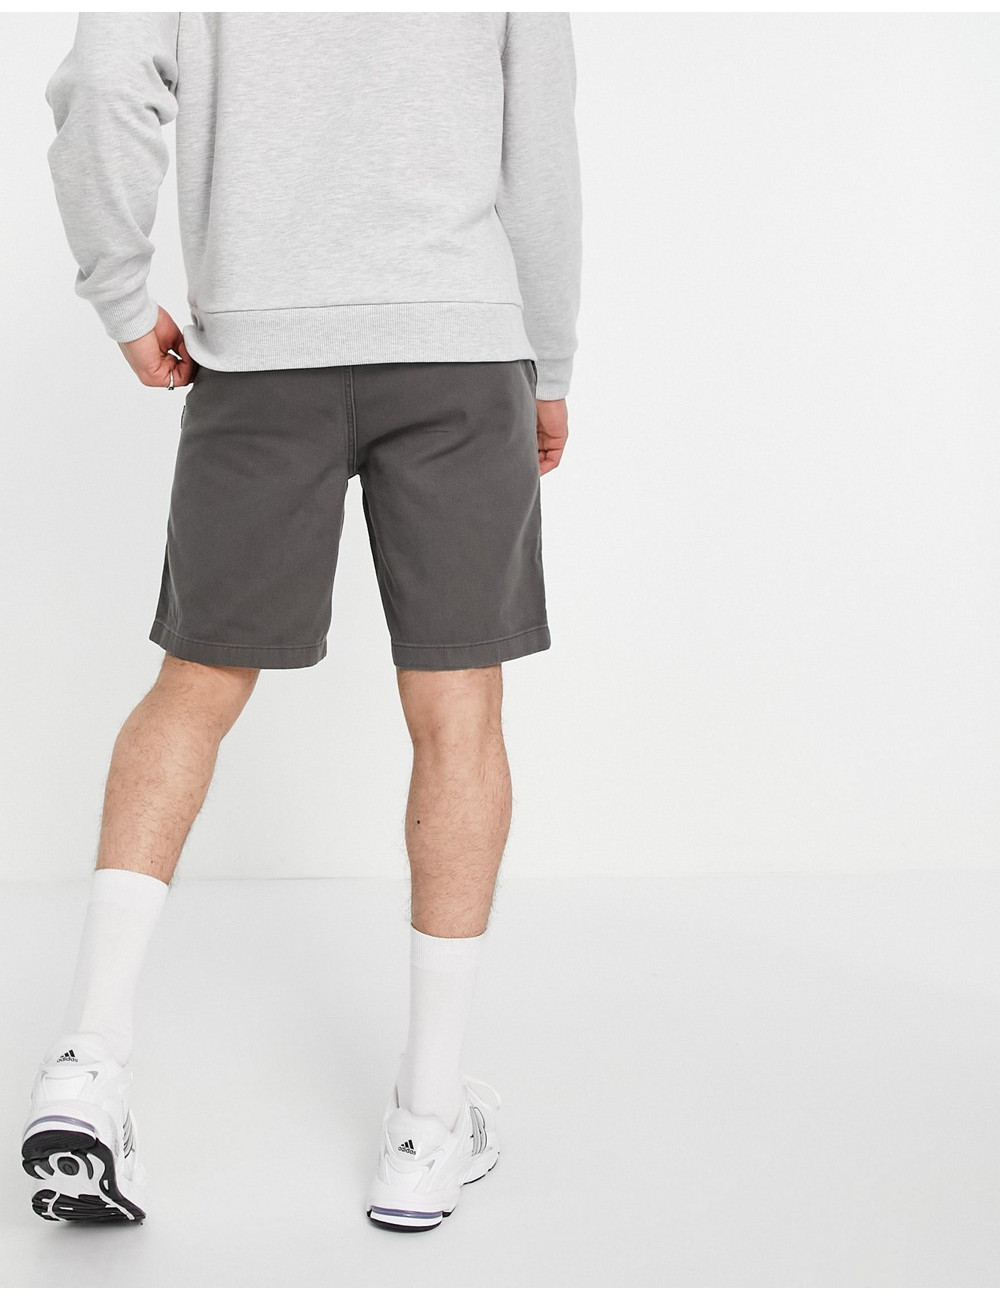 Napapijri Hale shorts in grey